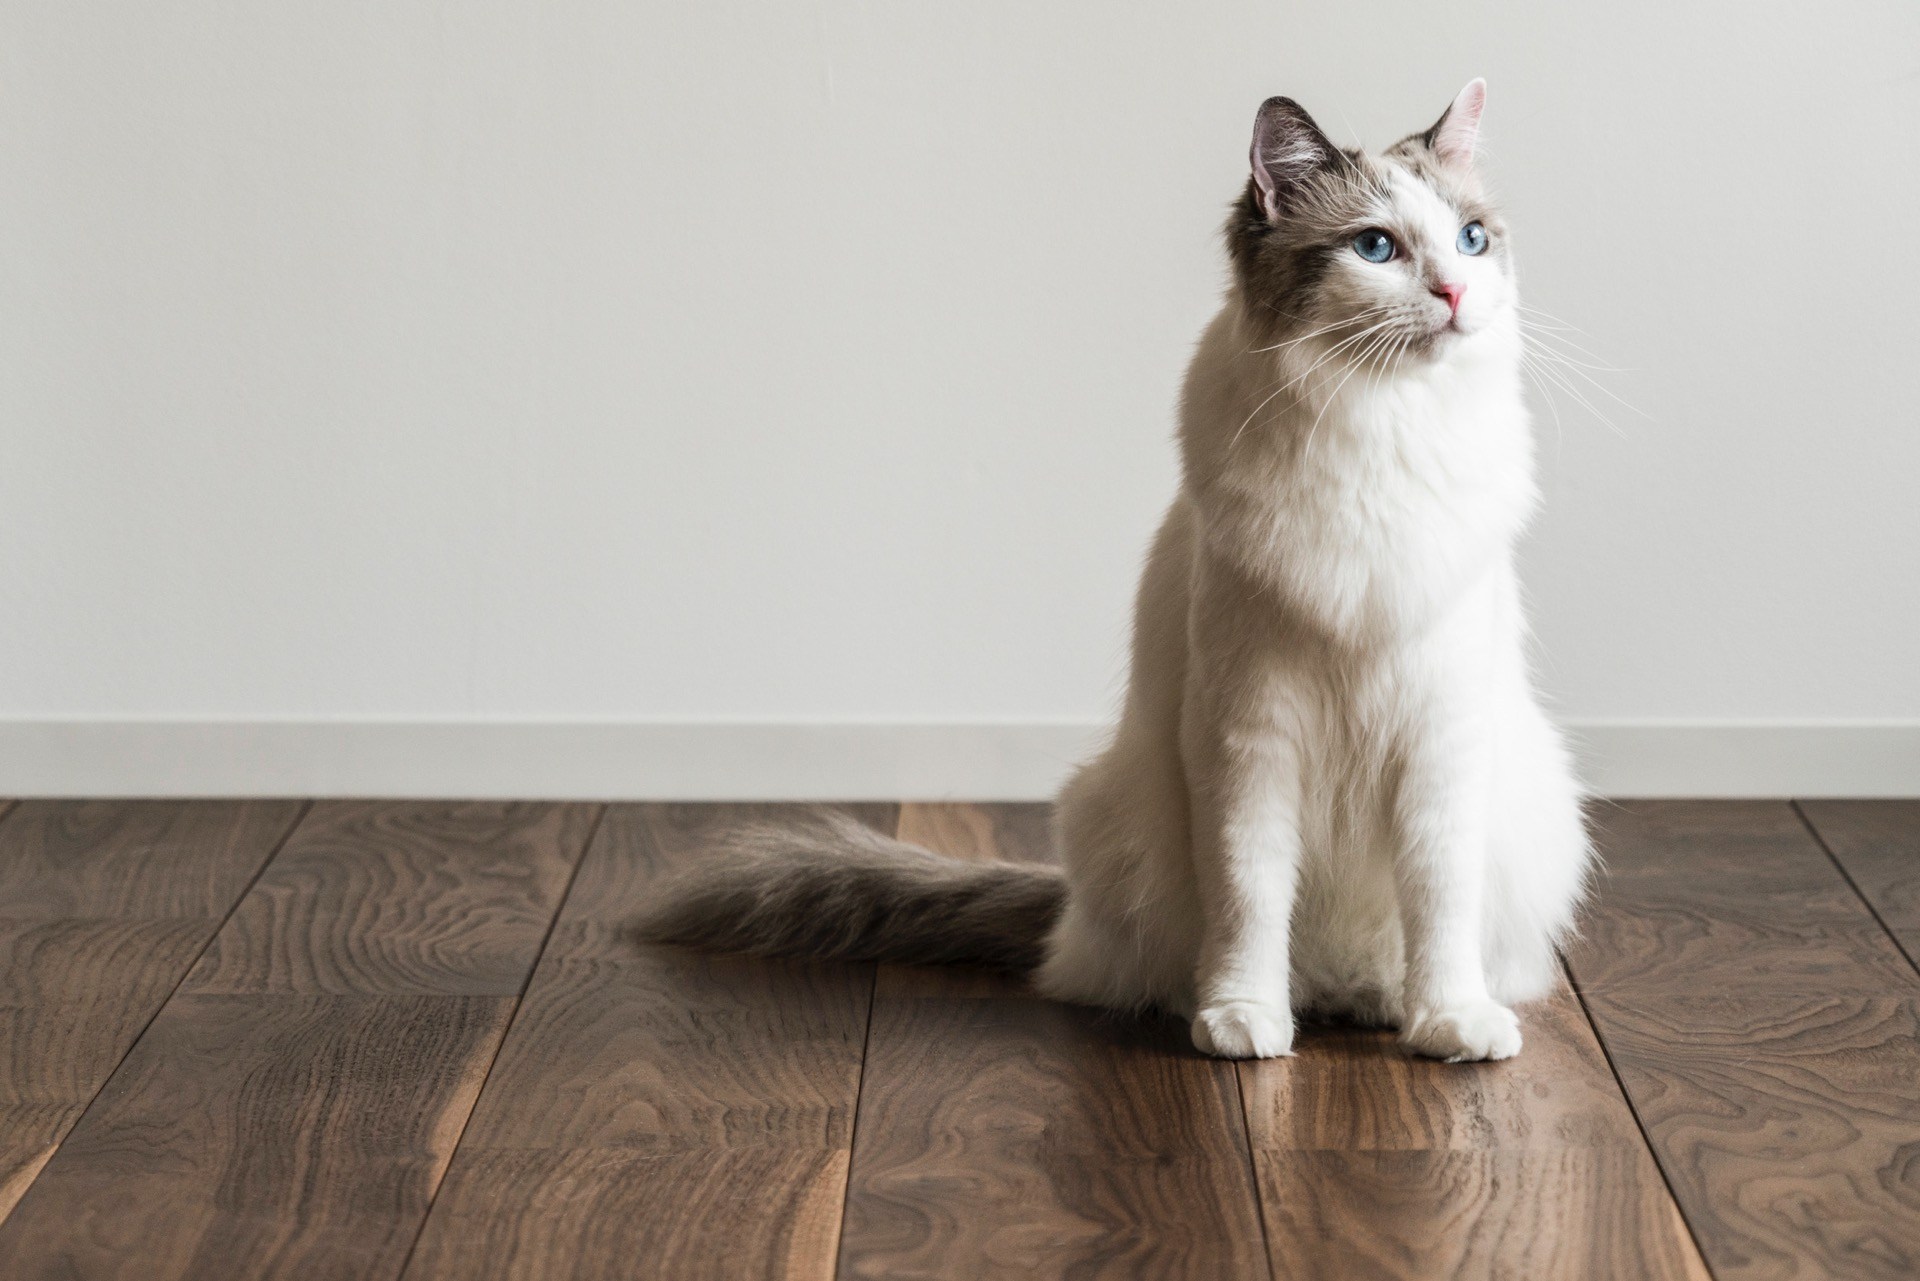 溝が浅く掃除しやすいヒノキの床板、猫の姿も映え映えしく